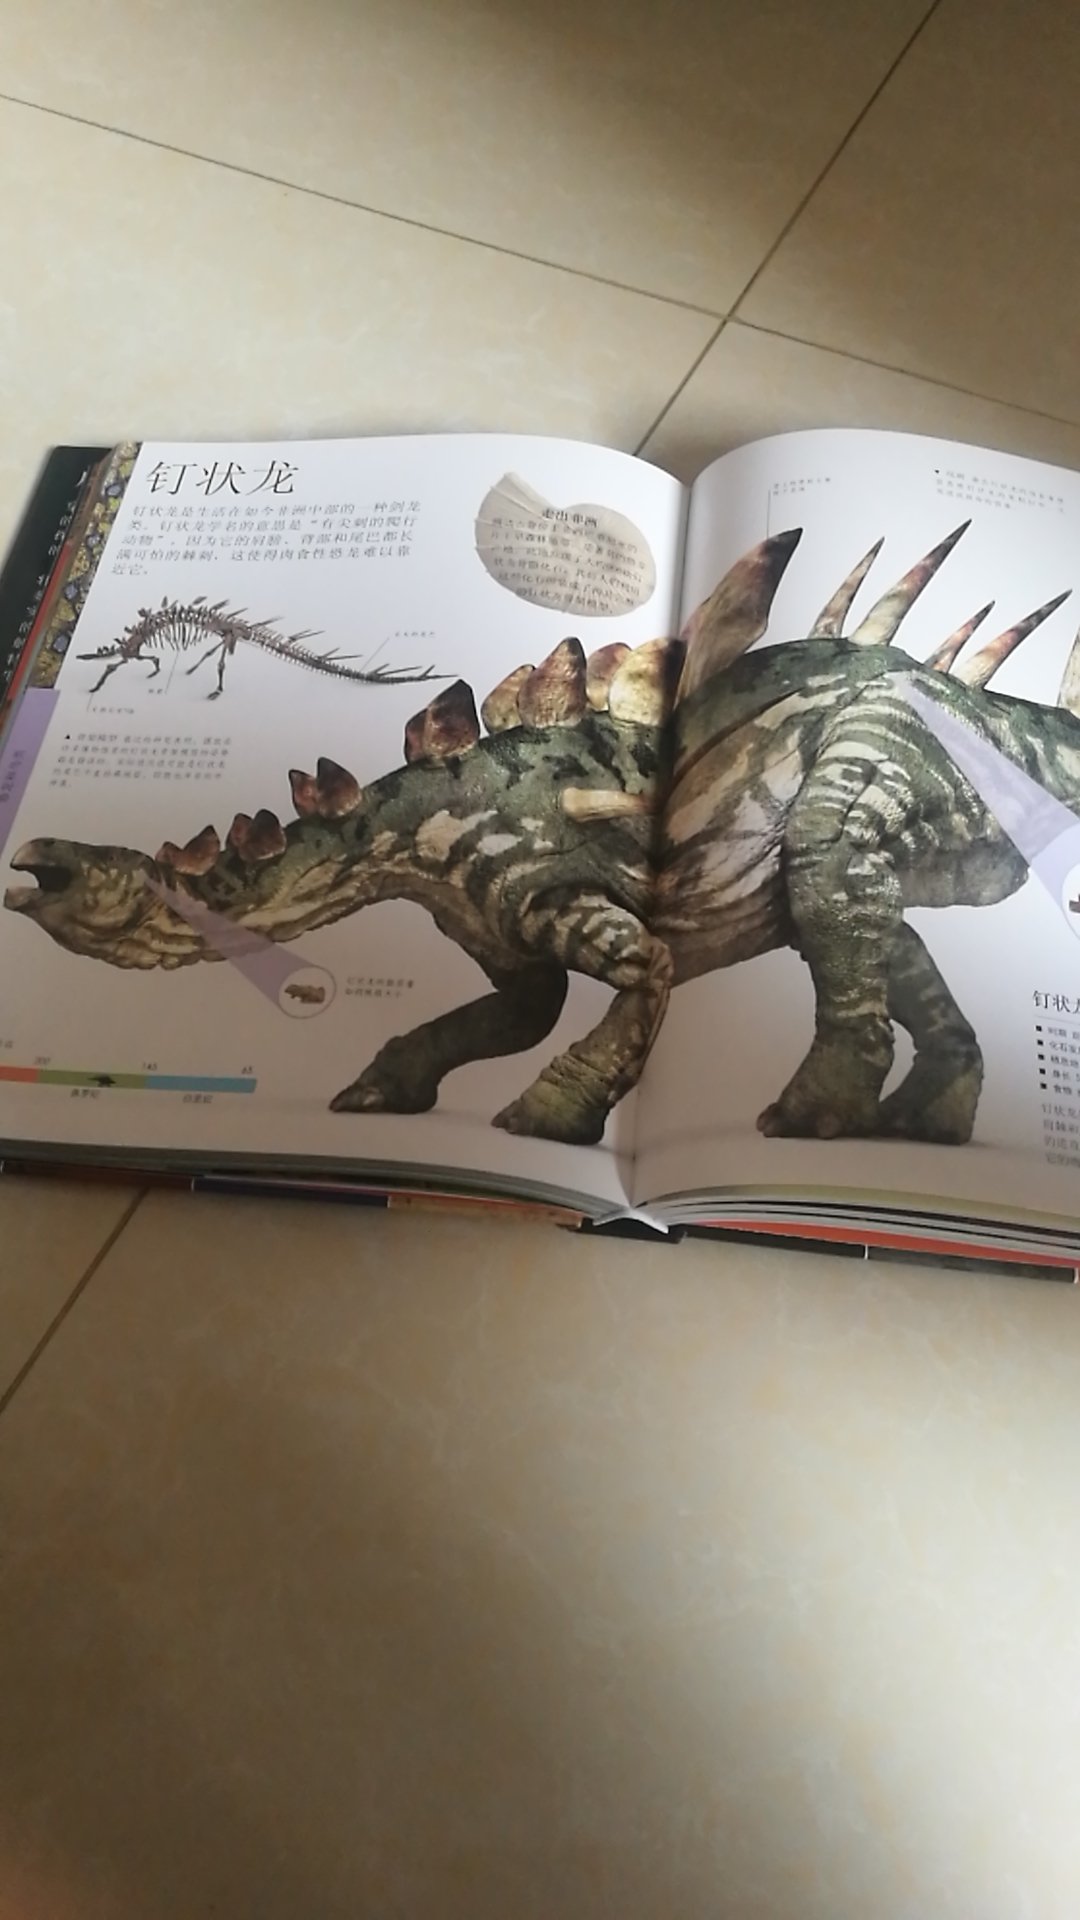 小男孩估计都是恐龙迷吧，儿子对恐龙书和玩具毫无免疫力，前前后后入手好多绘本，所以老母亲下定决心买来这本书，希望他能喜欢